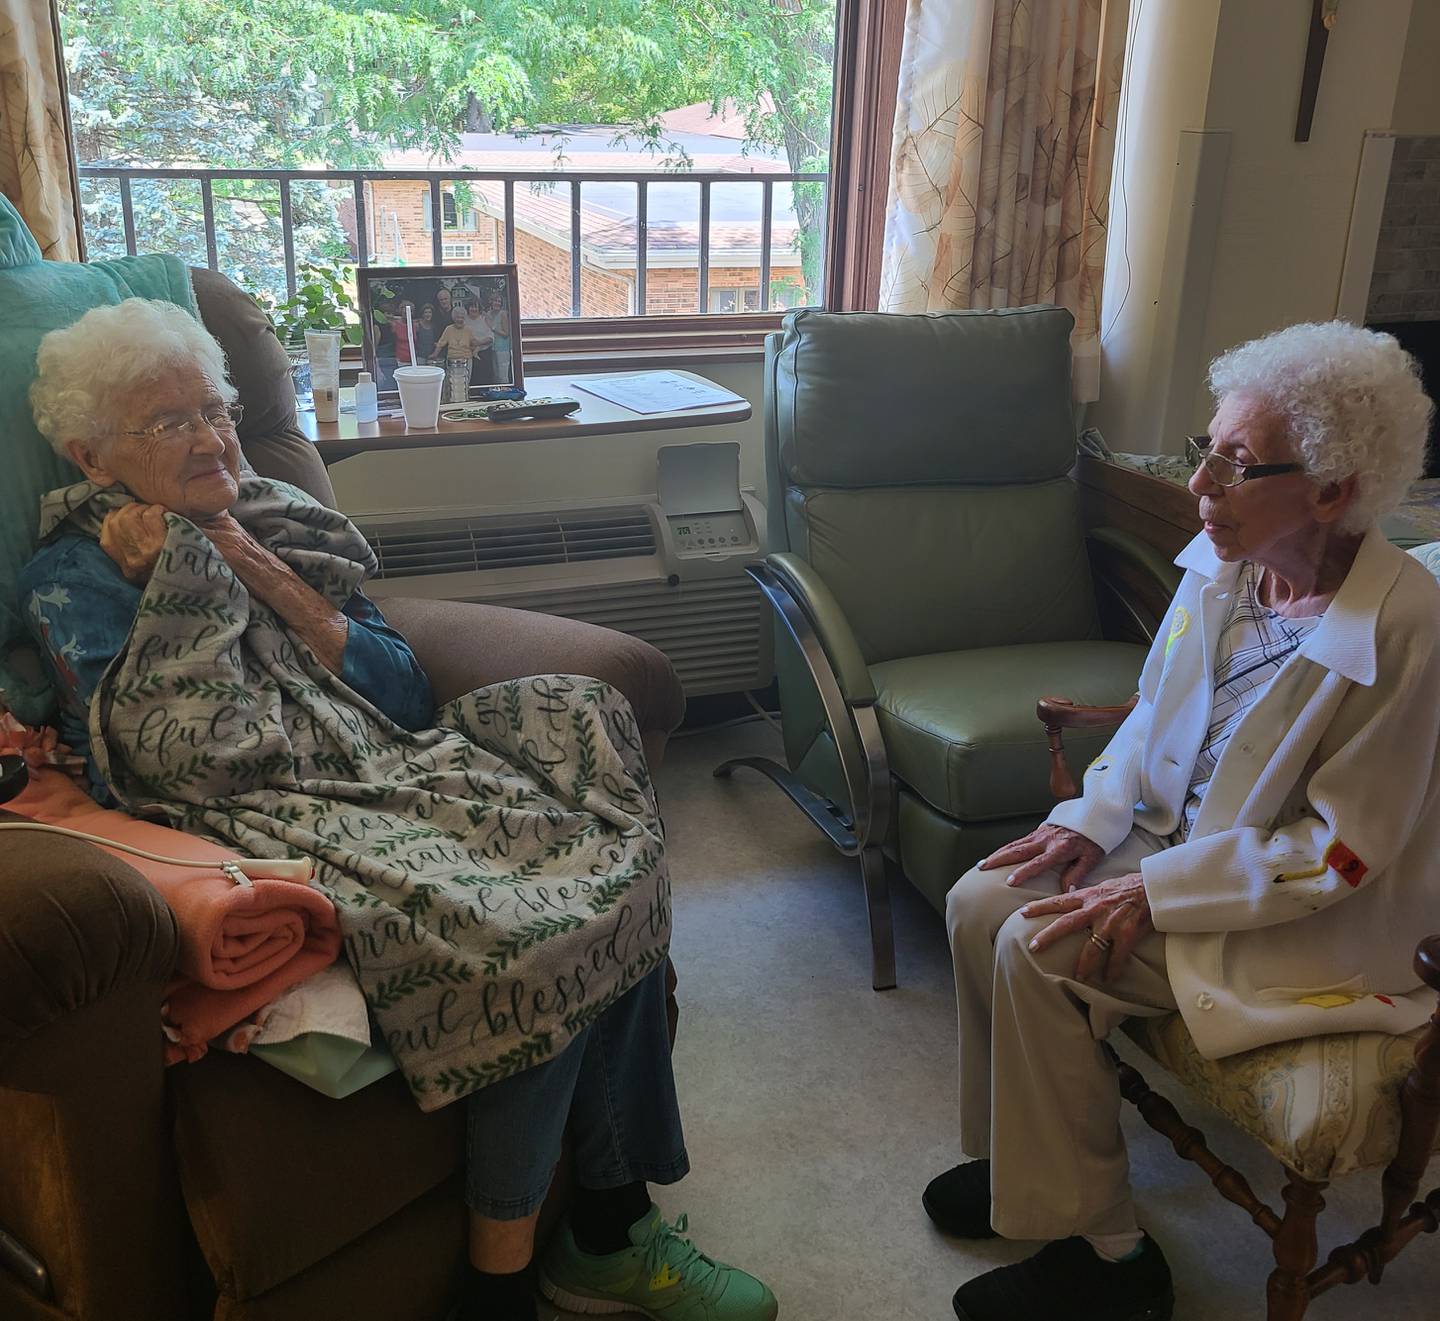 Alberta, left, turned 102 on Aug. 16; Belle just turned 97.